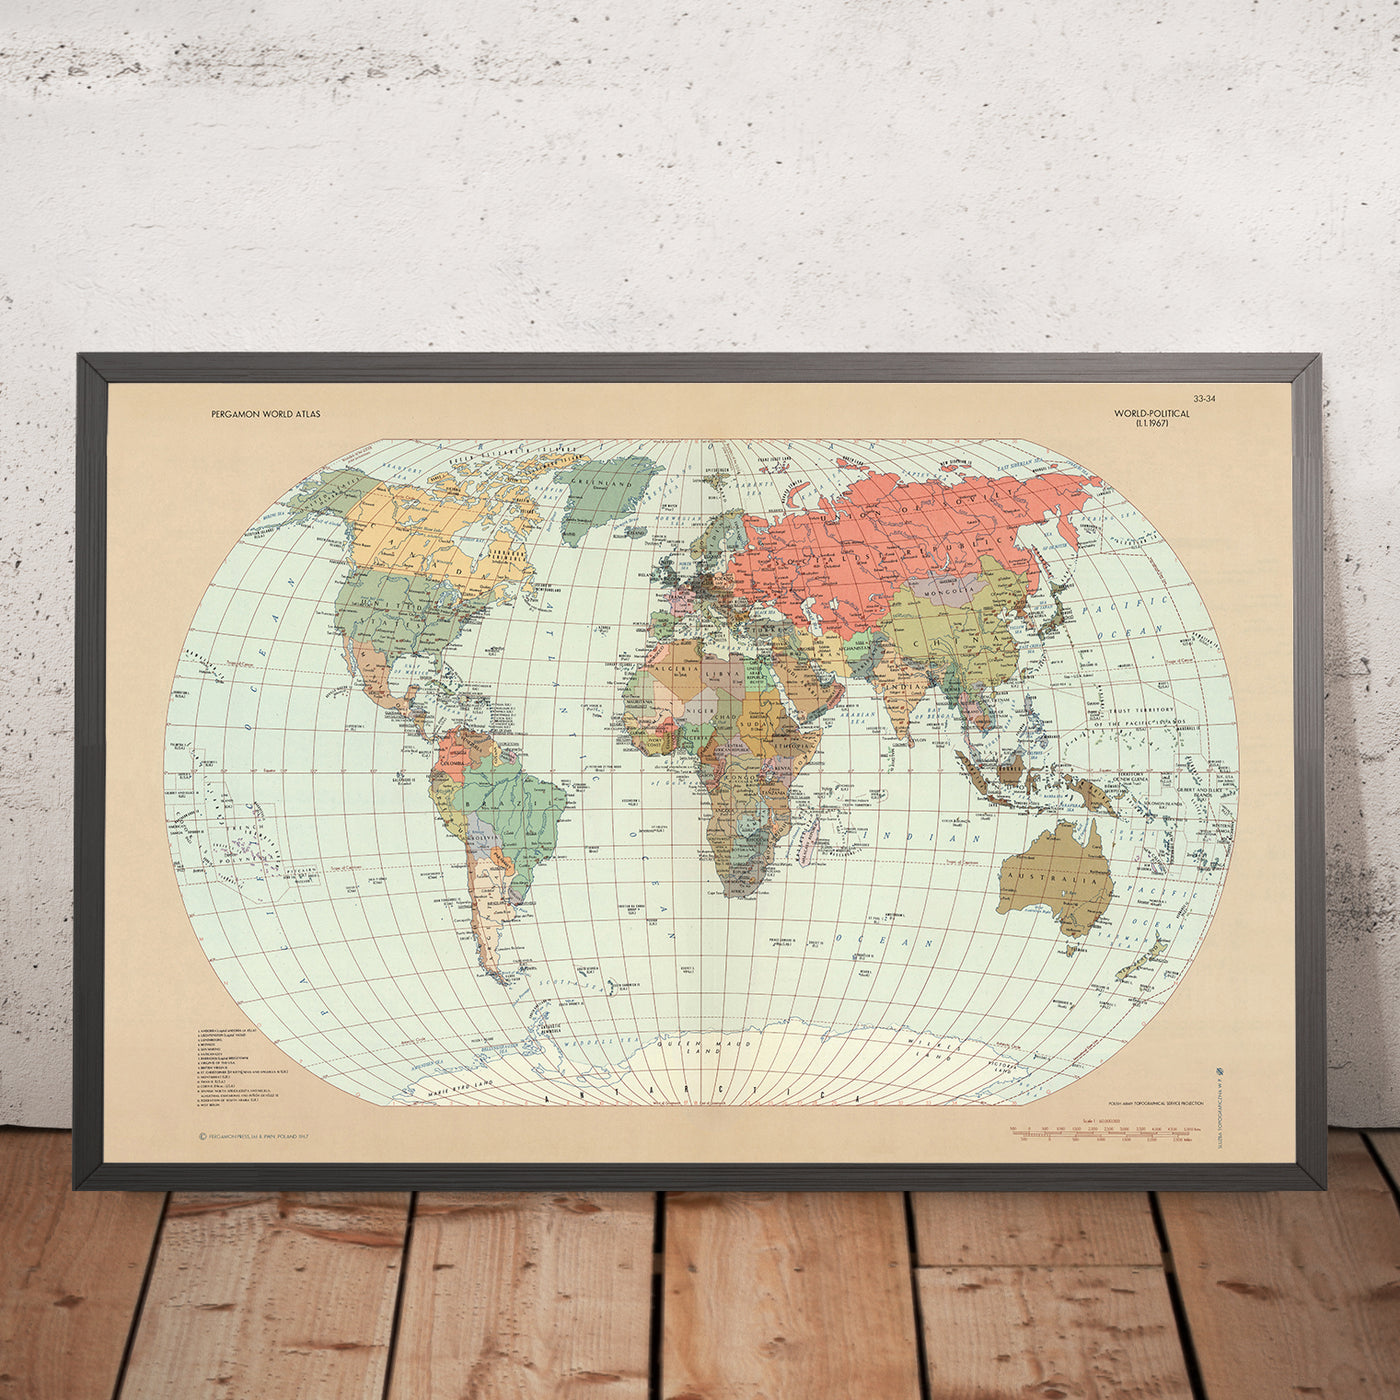 Carte du monde politique de l’Ancienne carte du monde par , 1967 : ère de la guerre froide, frontières politiques détaillées, projection unique